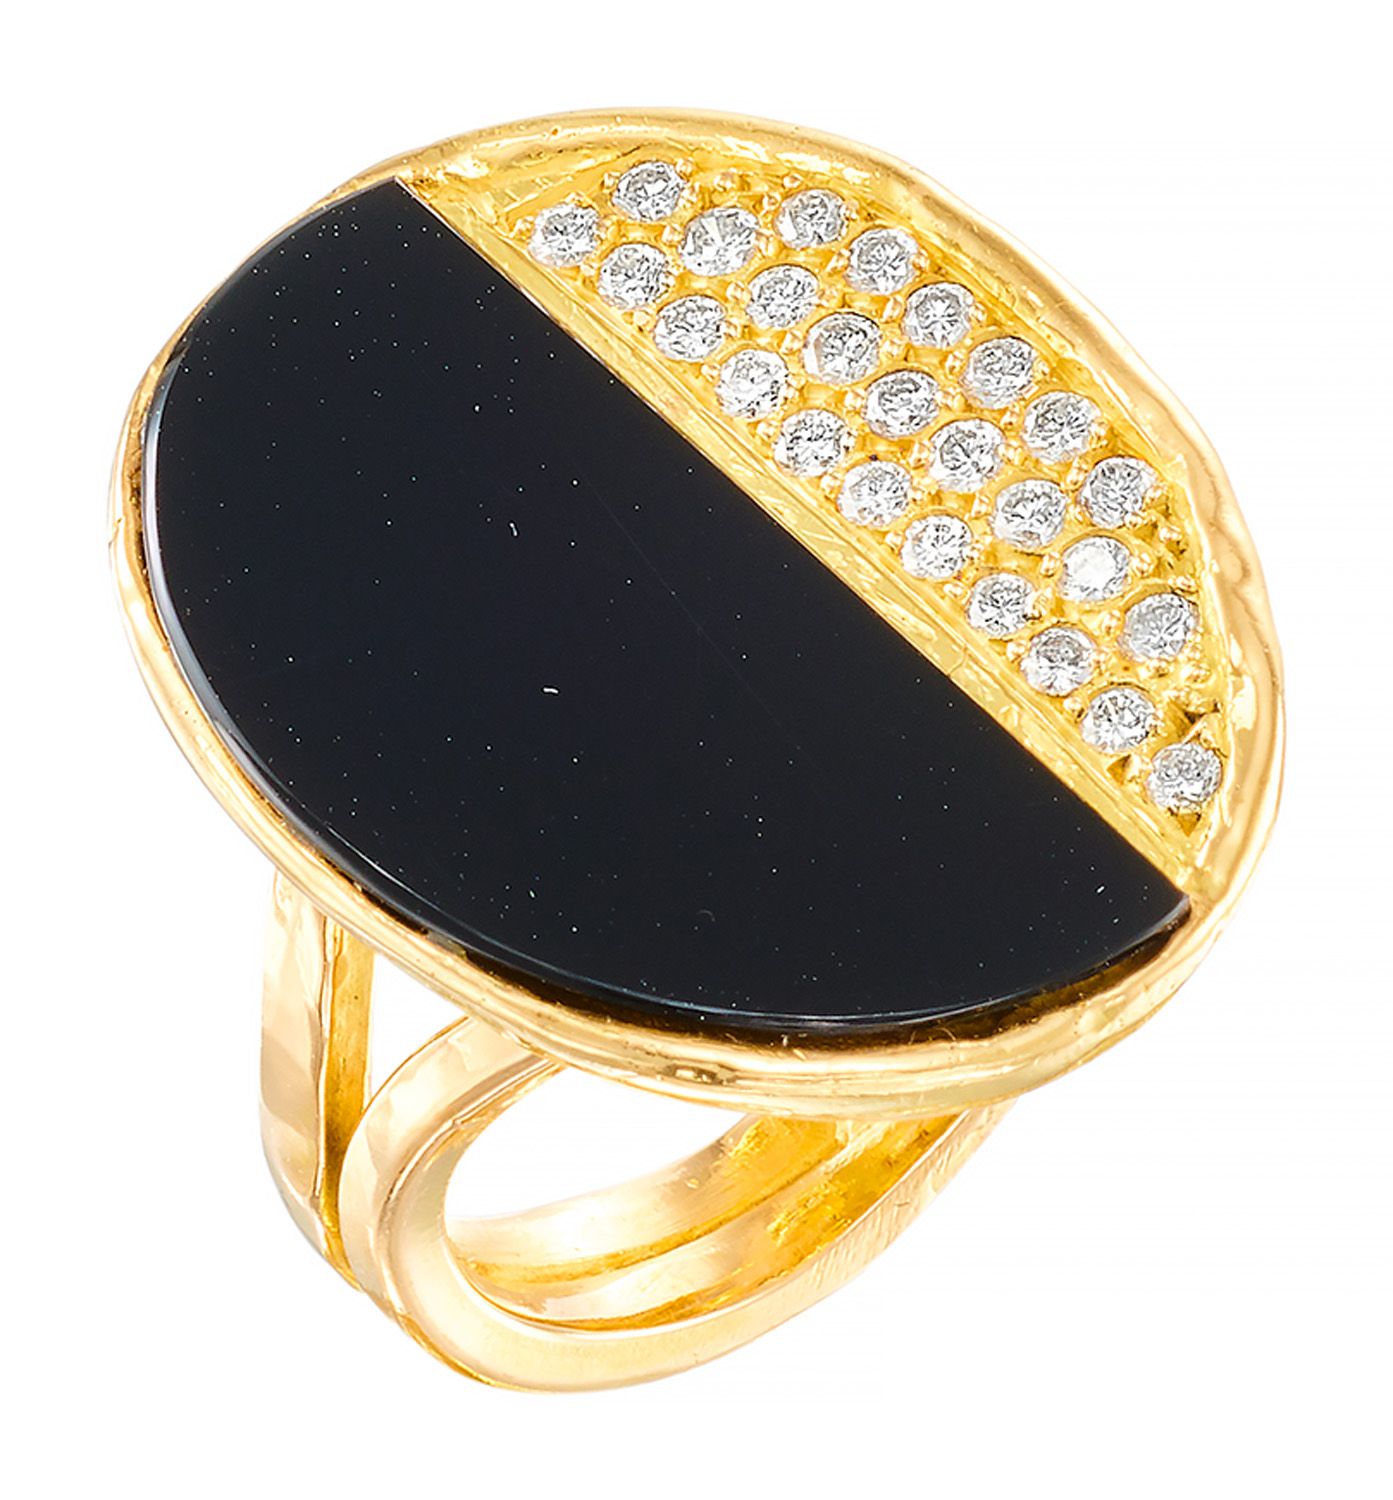 BAGUE MODERNISTE 黃金製作，雙層鍛造的壺身托著一個橢圓形的盤子，上面裝飾著黑瑪瑙，並有一層明亮式切割的鑽石。

法国作品，标志为Ste F

T&hellip;